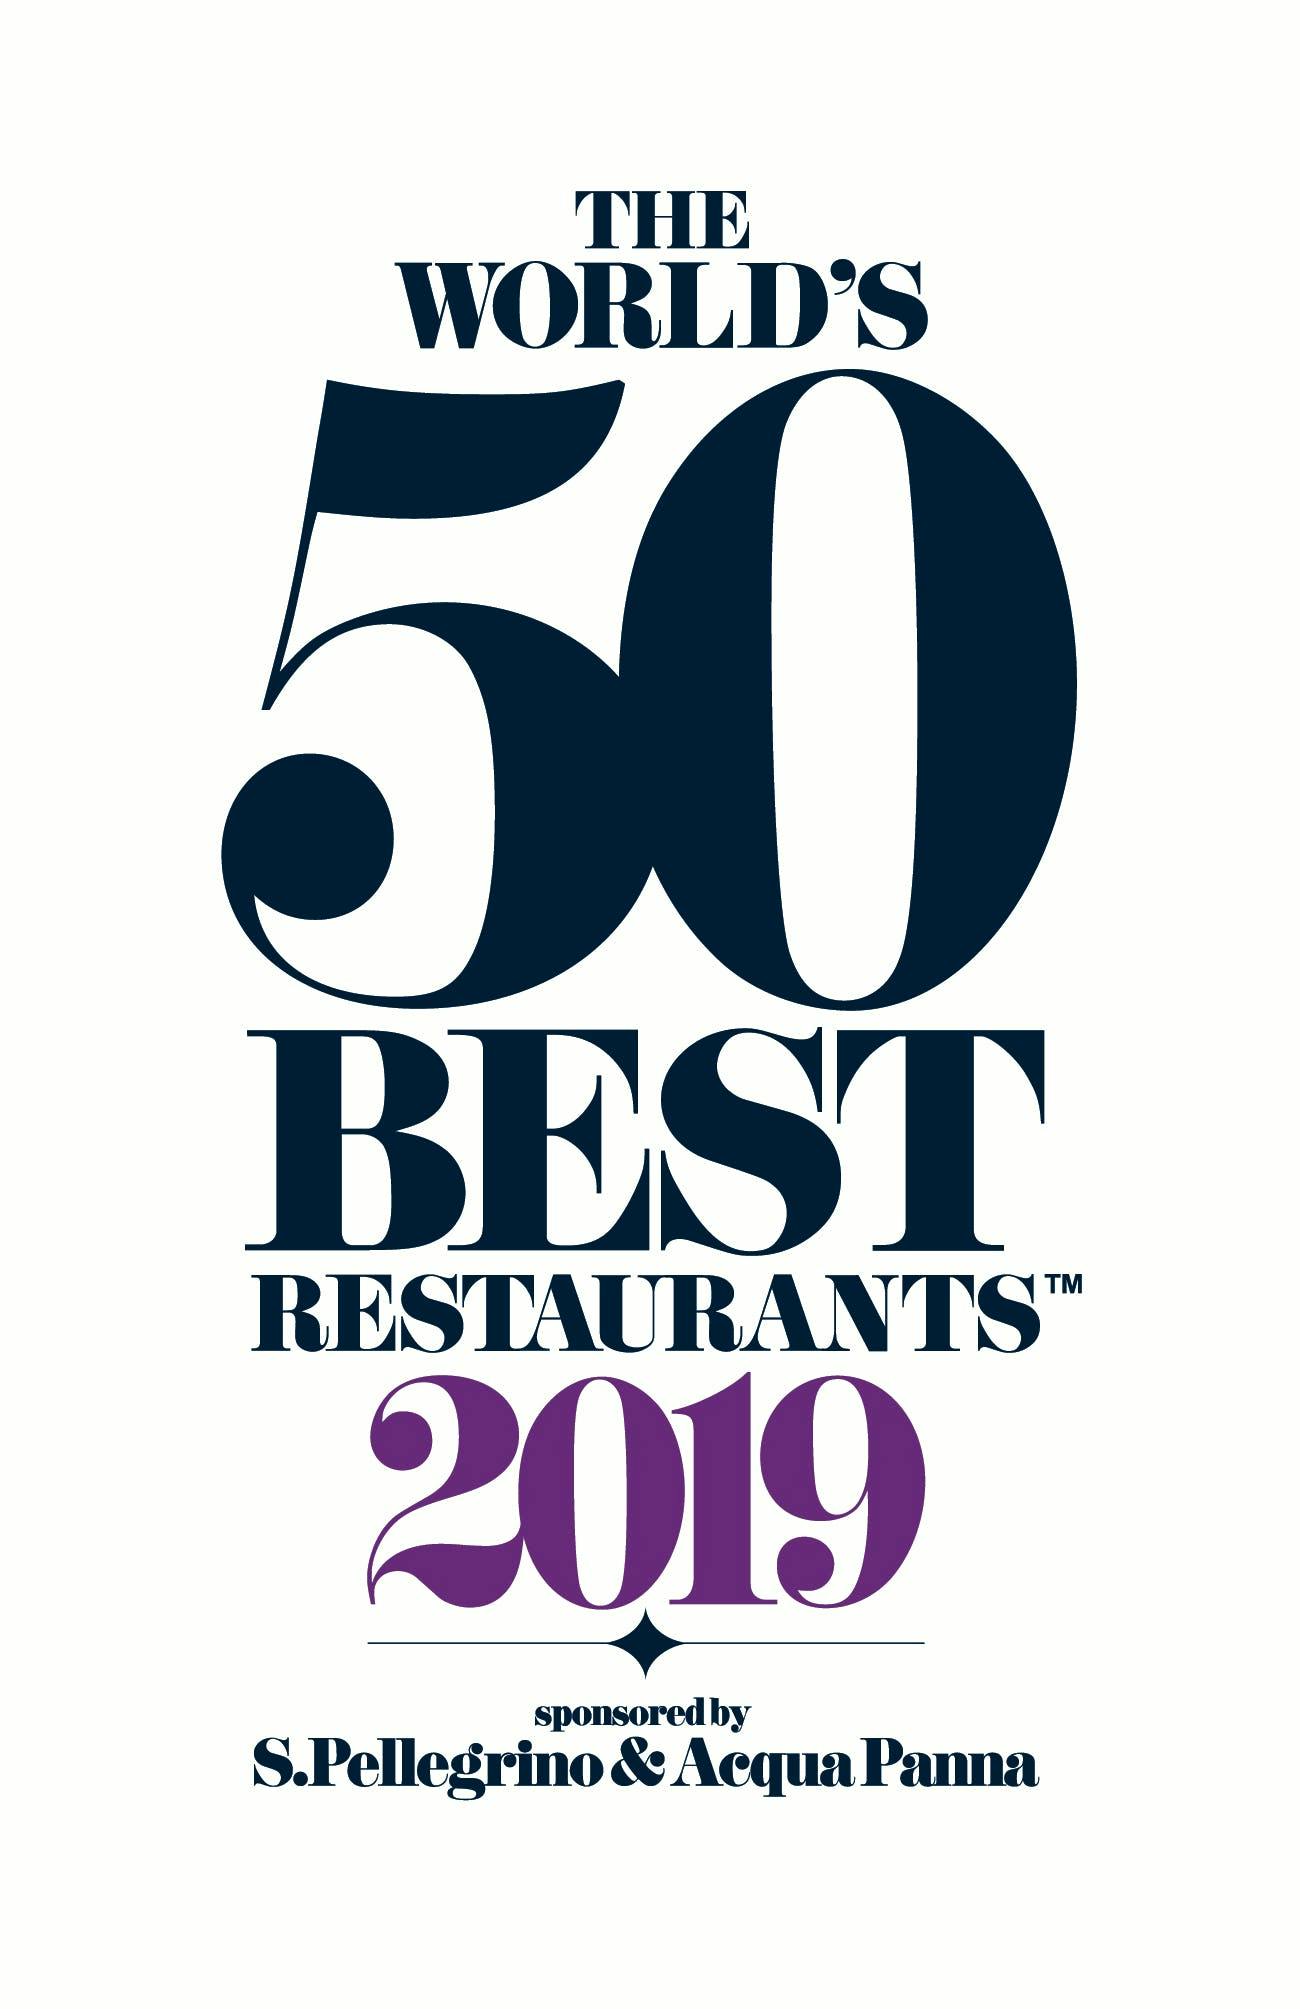 Numéro d'image 32 de la section actuelle de Dekton® by Cosentino: Sponsor officiel de l’évènement international The World’s 50 Best Restaurants 2019 de Cosentino France